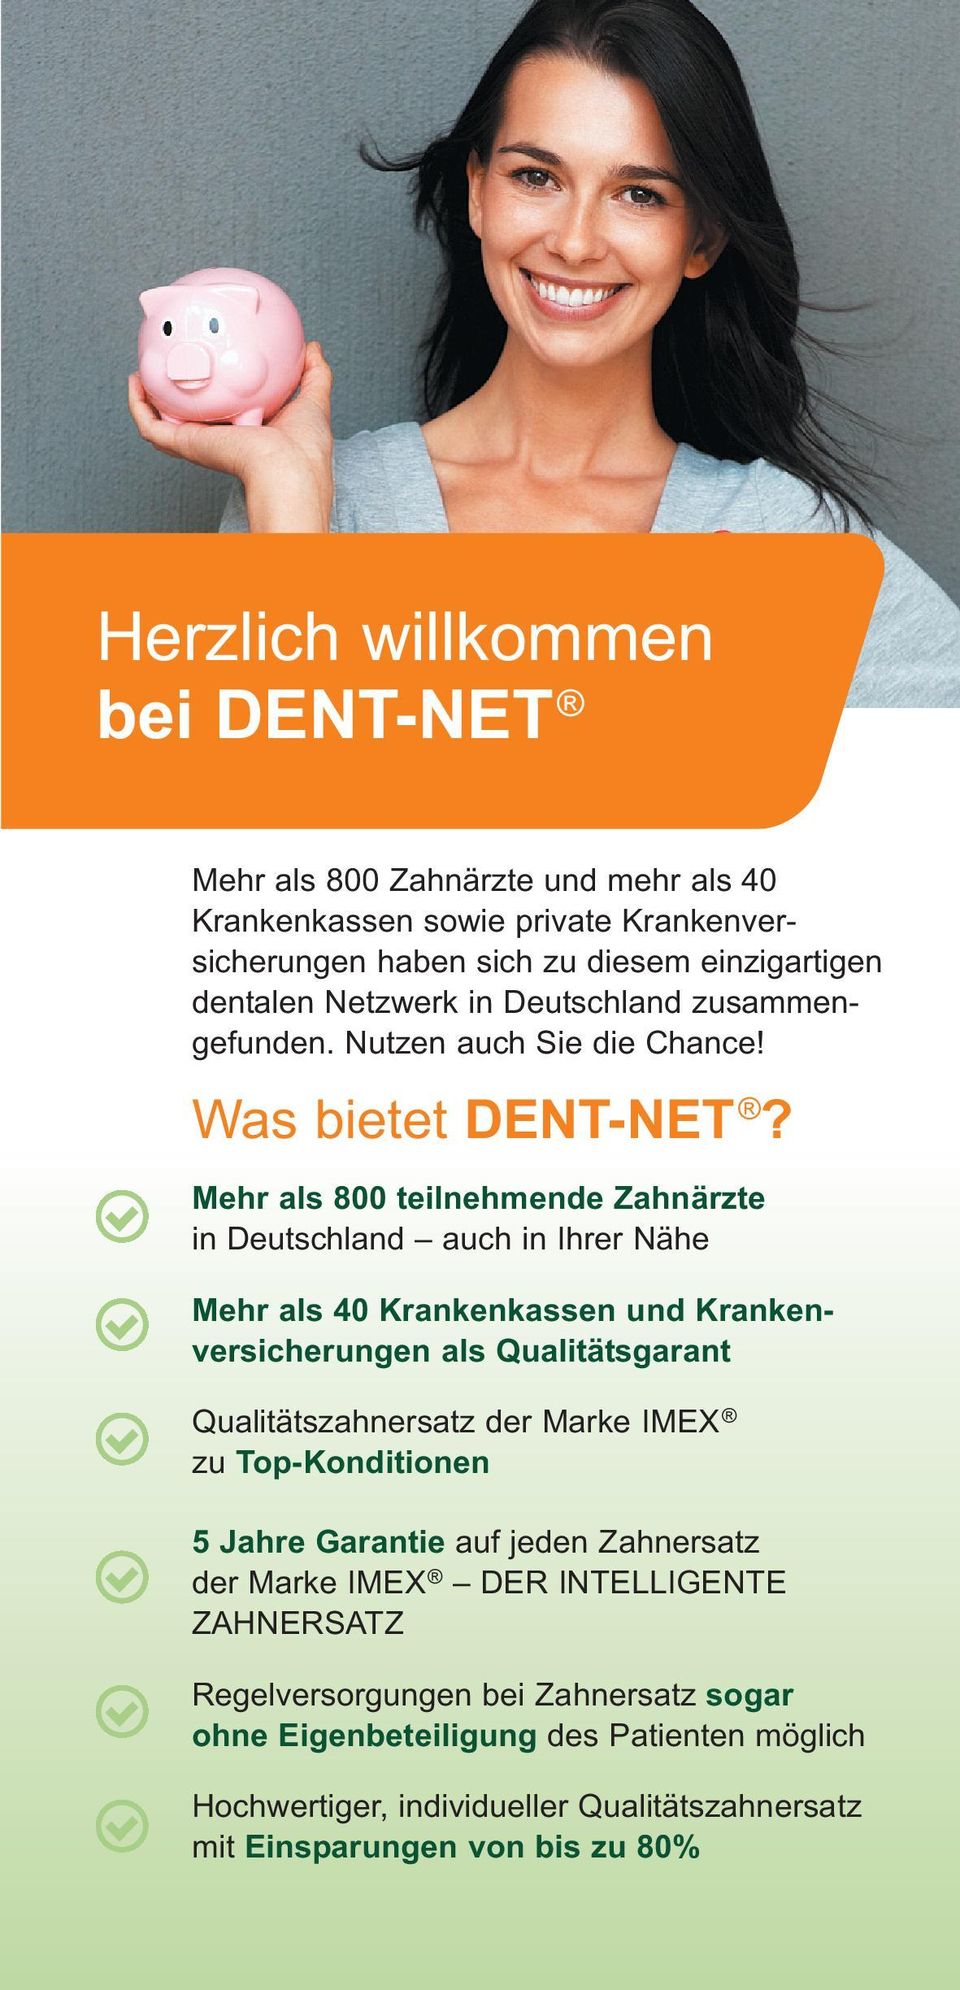 Mehr als 800 teilnehmende Zahnärzte in Deutschland auch in Ihrer Nähe Mehr als 40 Krankenkassen und Krankenversicherungen als Qualitätsgarant Qualitätszahnersatz der Marke